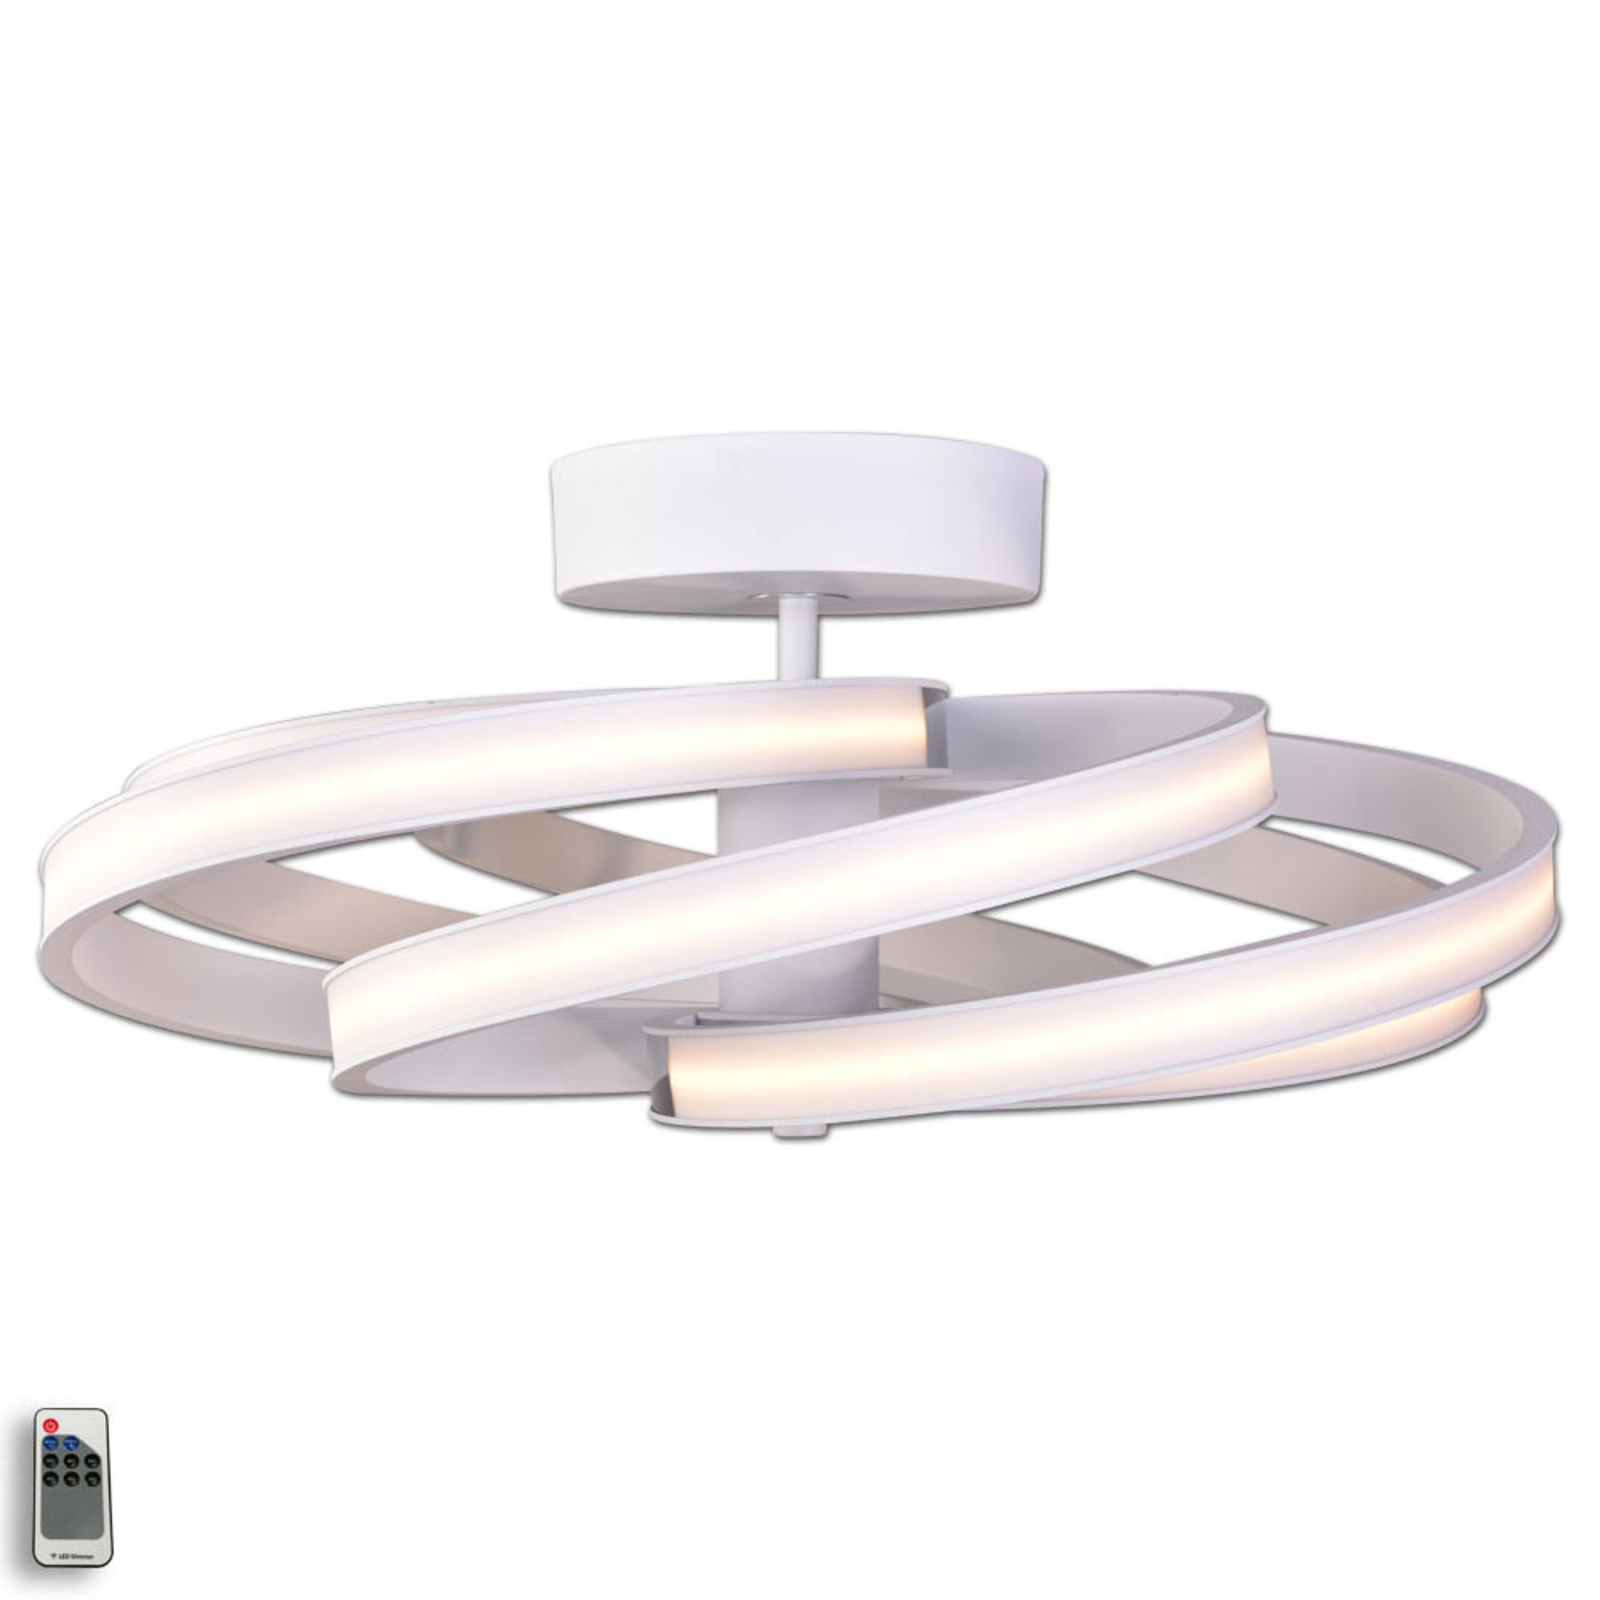 Zoya - modern LED ceiling light, white